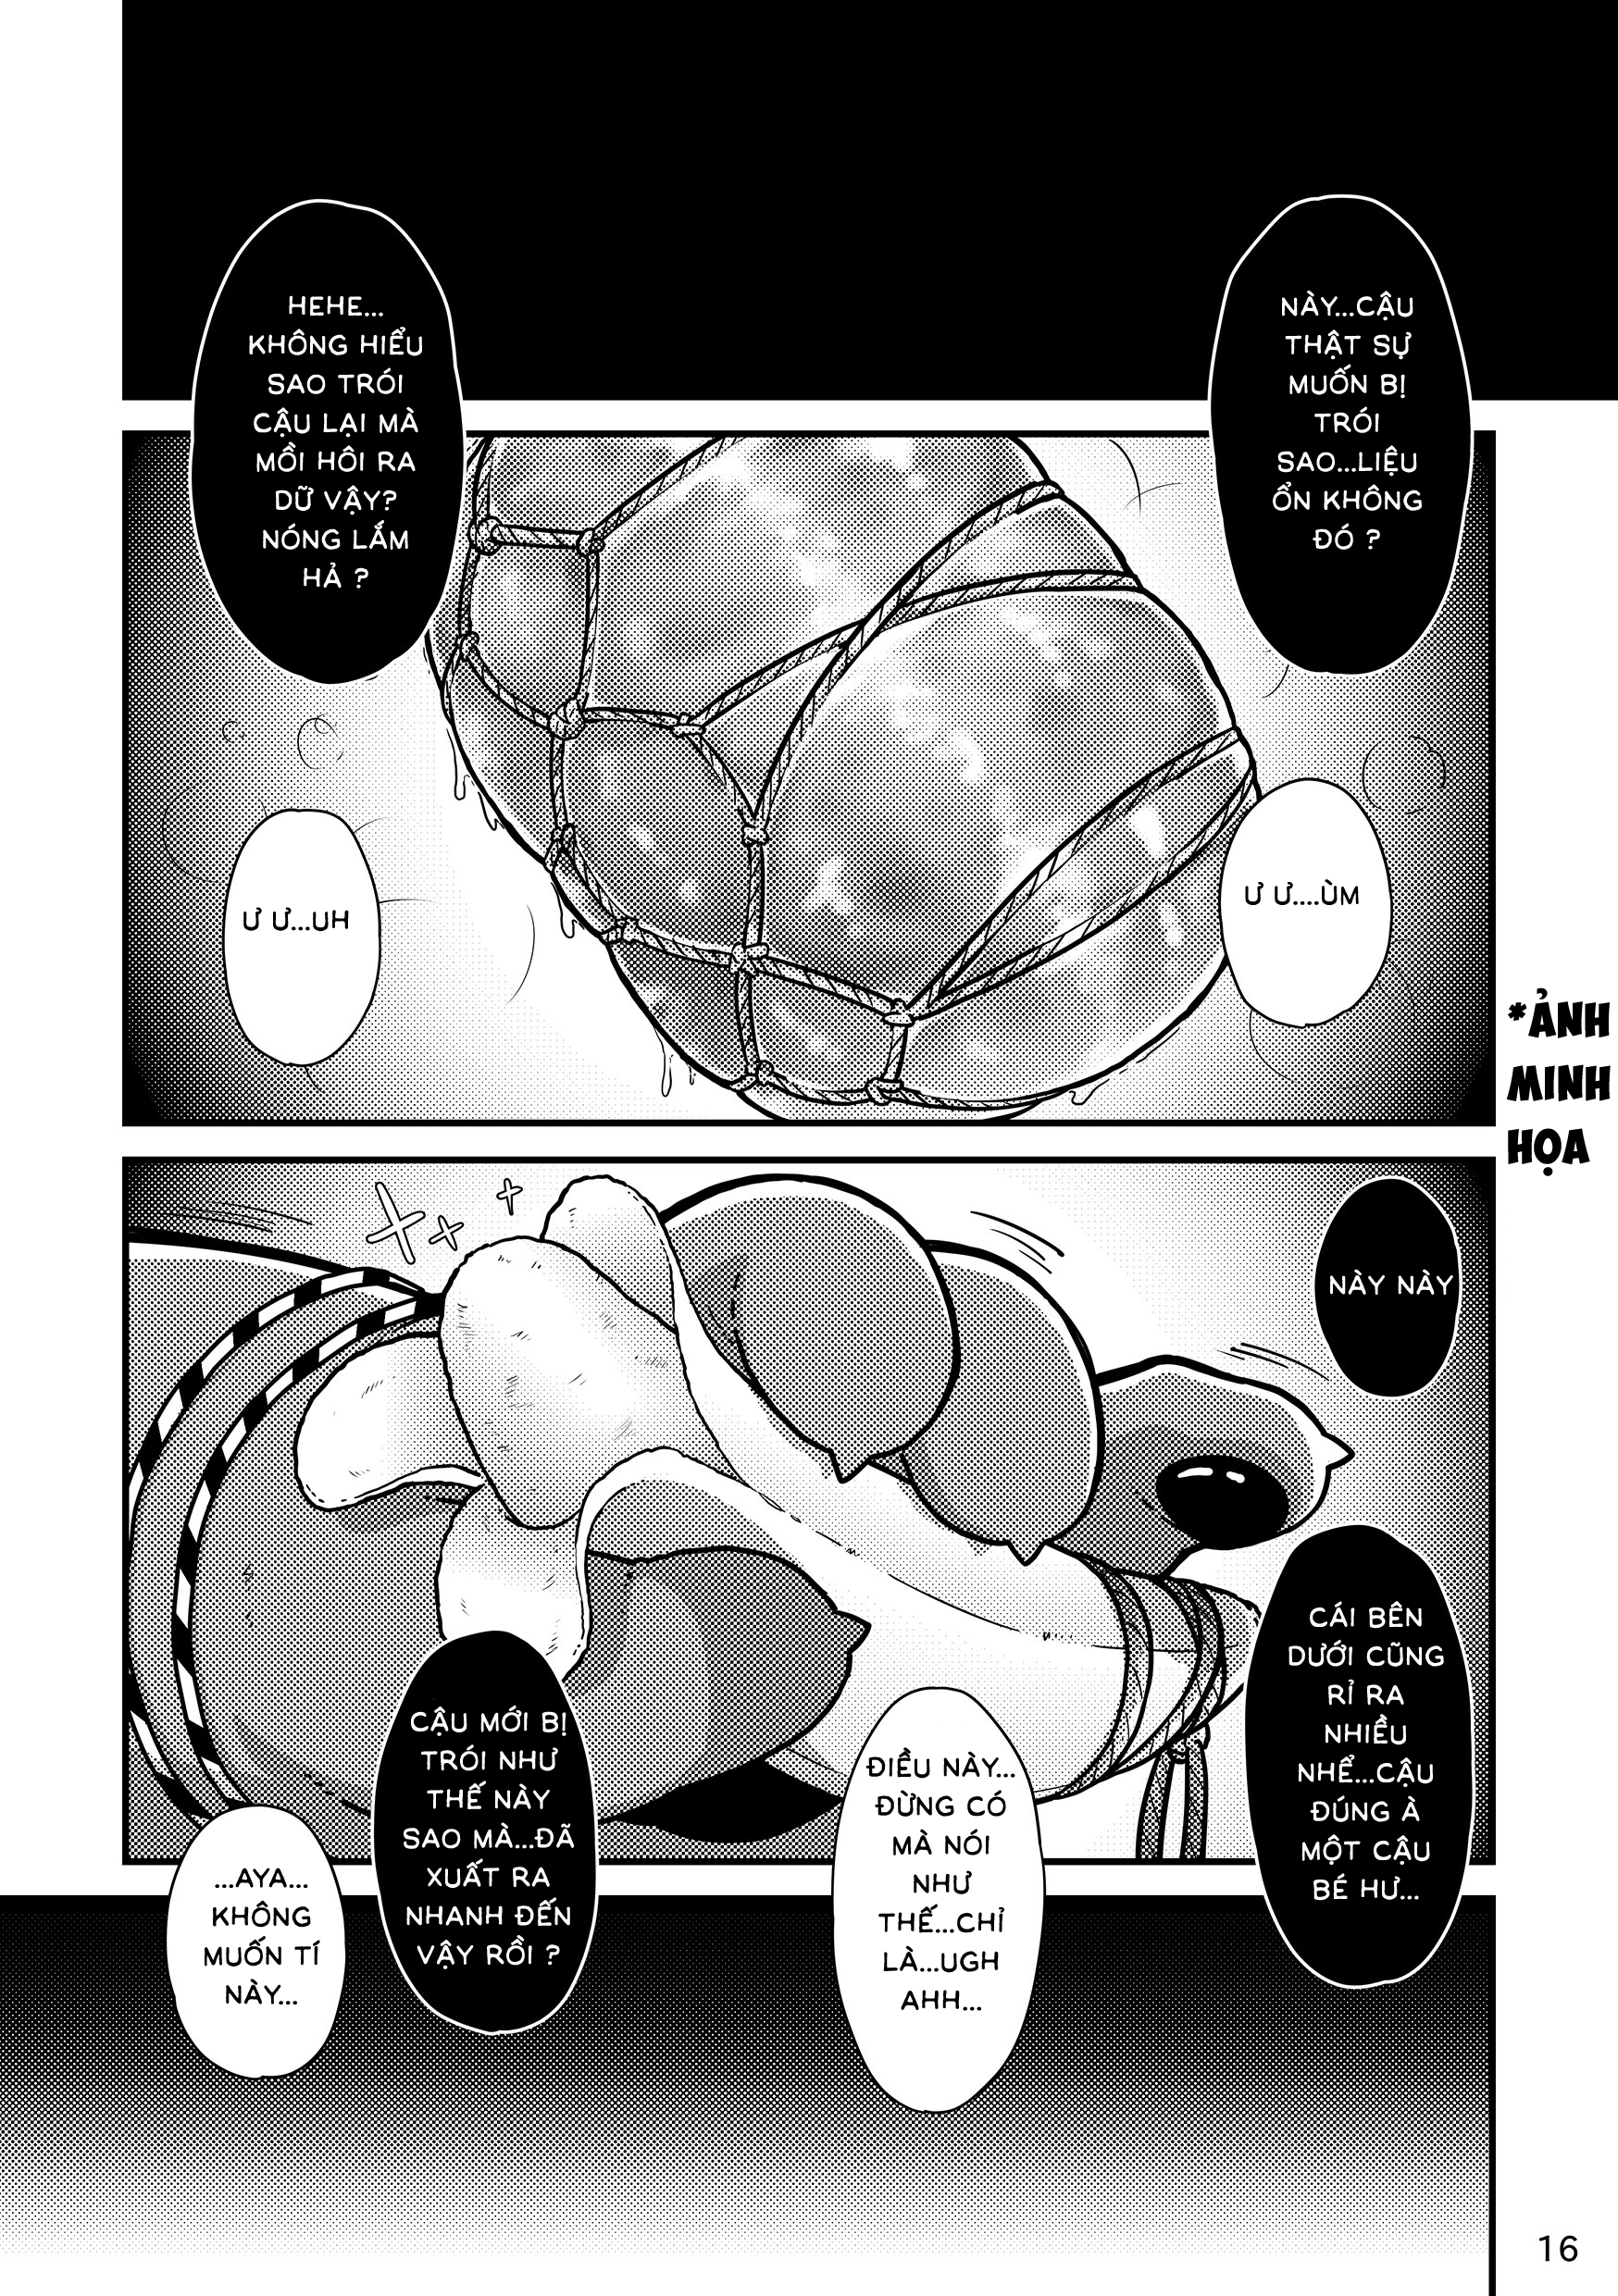 [ Hinami ] Cuốn Bondage Shiro Và Kuro [VN] - Trang 18